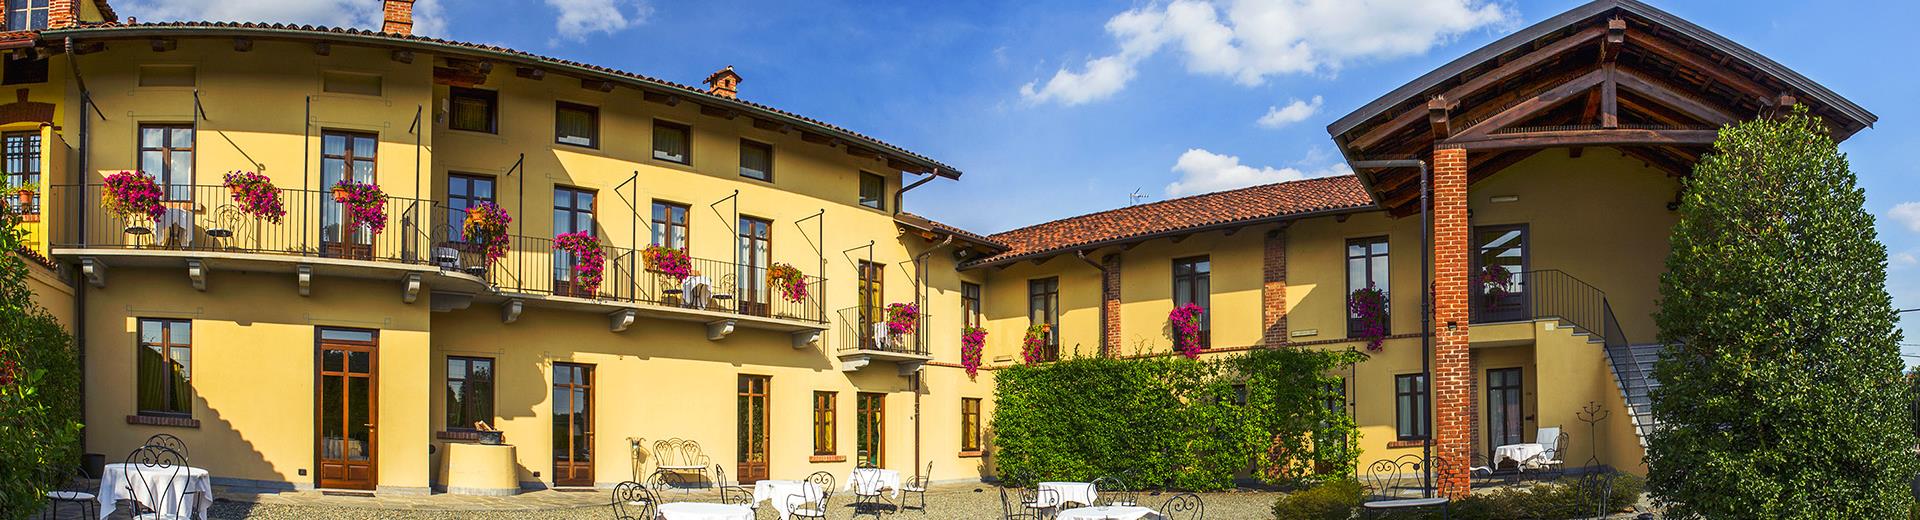 Das Best Western Plus Hotel Le Rondini bietet Ihnen die ideale Lösung für Ihren Aufenthalt. Ein paar Minuten vom Flughafen Caselle und eine kurze Entfernung vom Zentrum von Turin und dem Allianz-Stadion Juventus.